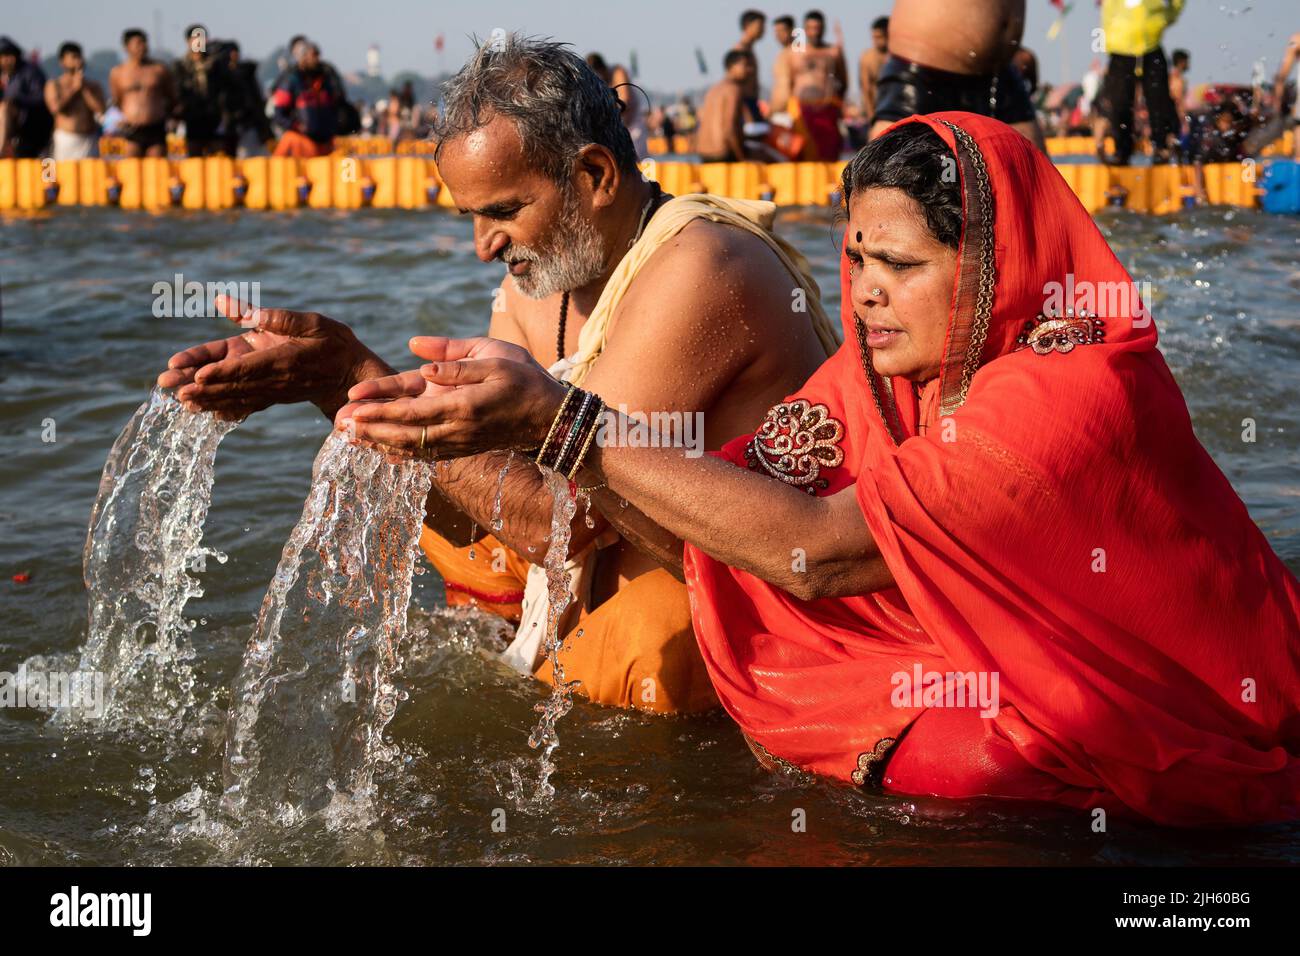 Les adorateurs hindous priant et se baignant dans le fleuve sacré du Gange au lever du soleil au Kumbh Mela Festival à Allahabad (Prayagraj), Uttar Pradesh, Inde. Banque D'Images